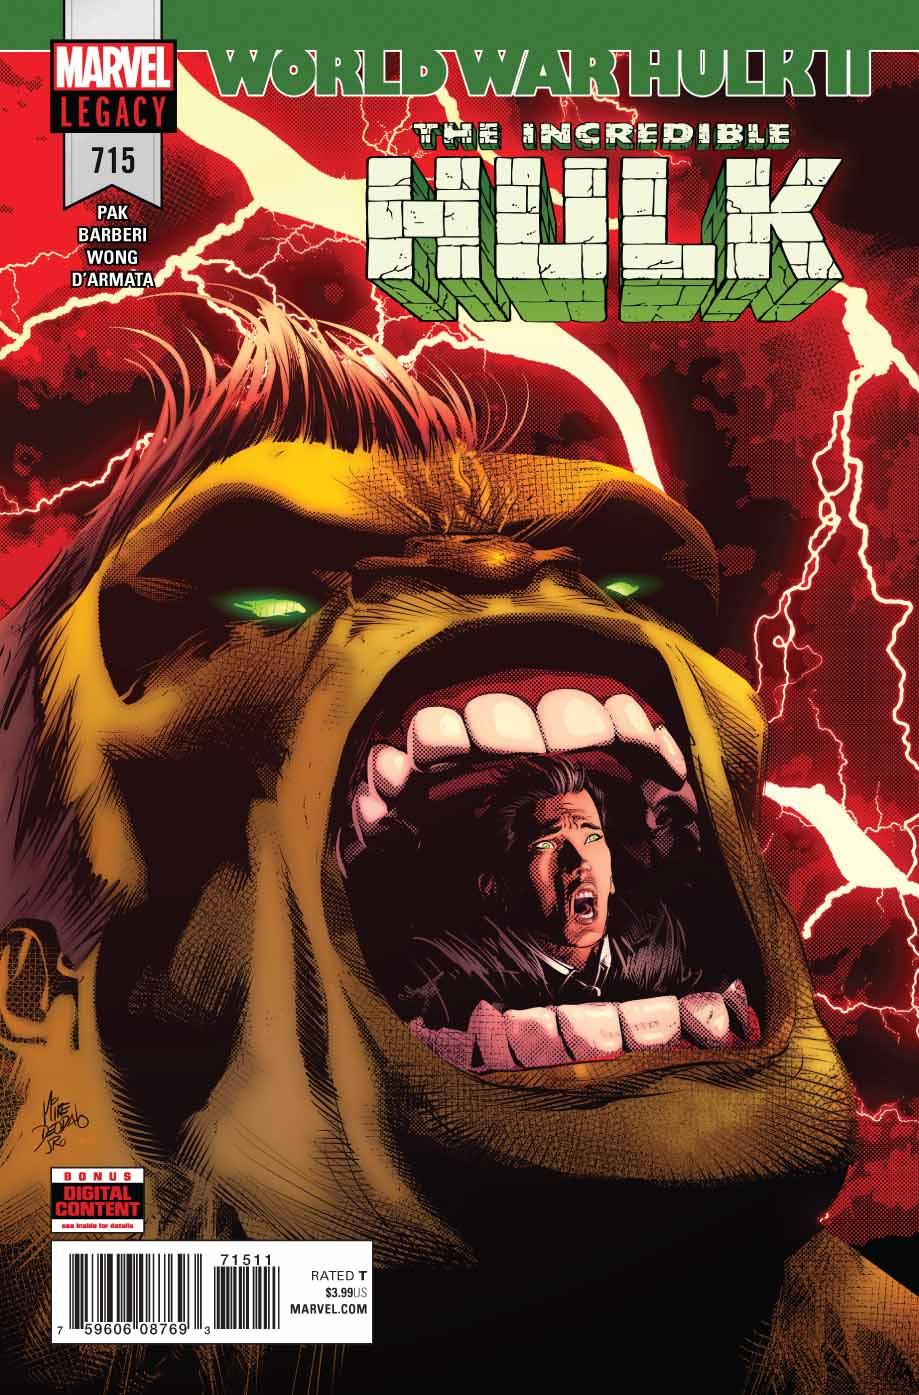 The Incredible Hulk Vol. 1 #715